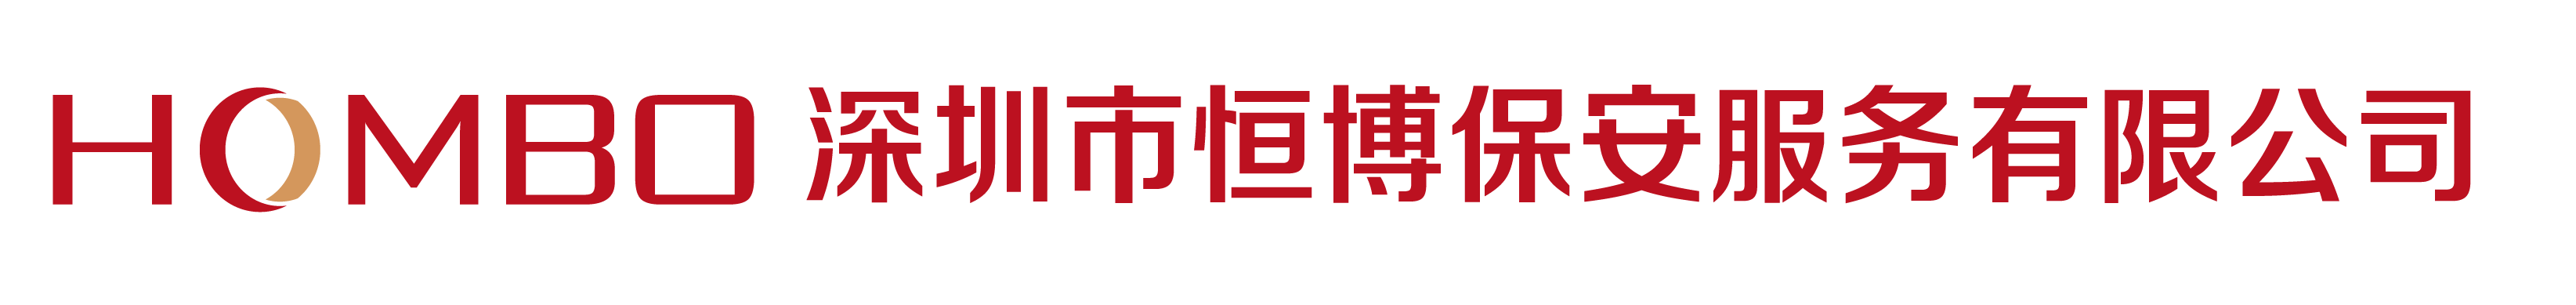 安保官网logo